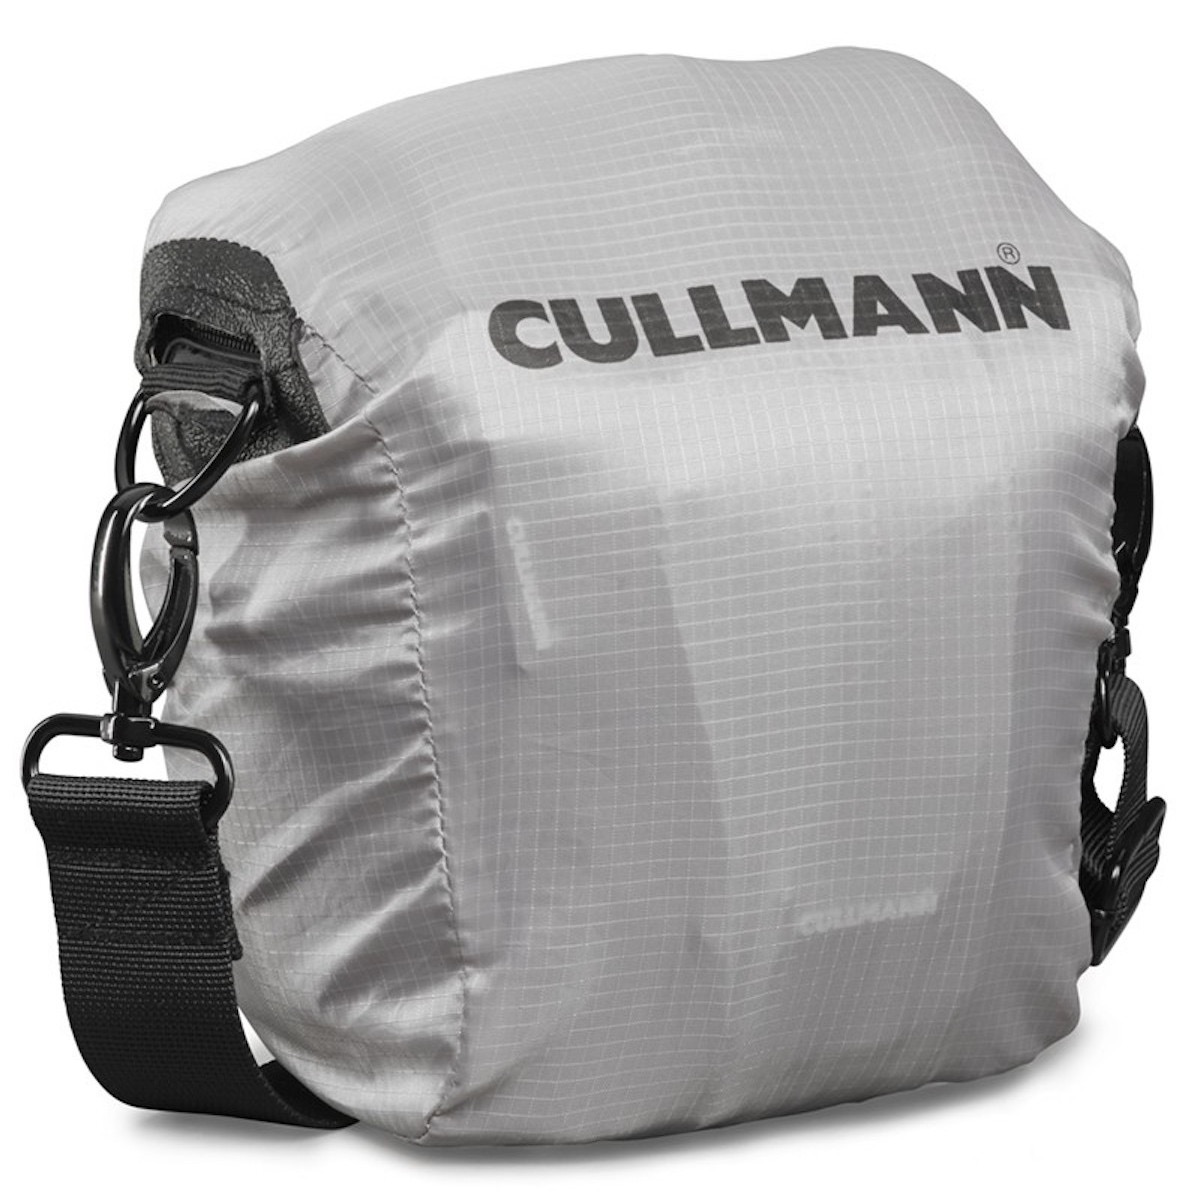 Cullmann Sydney pro Action 150 Kamera Tasche